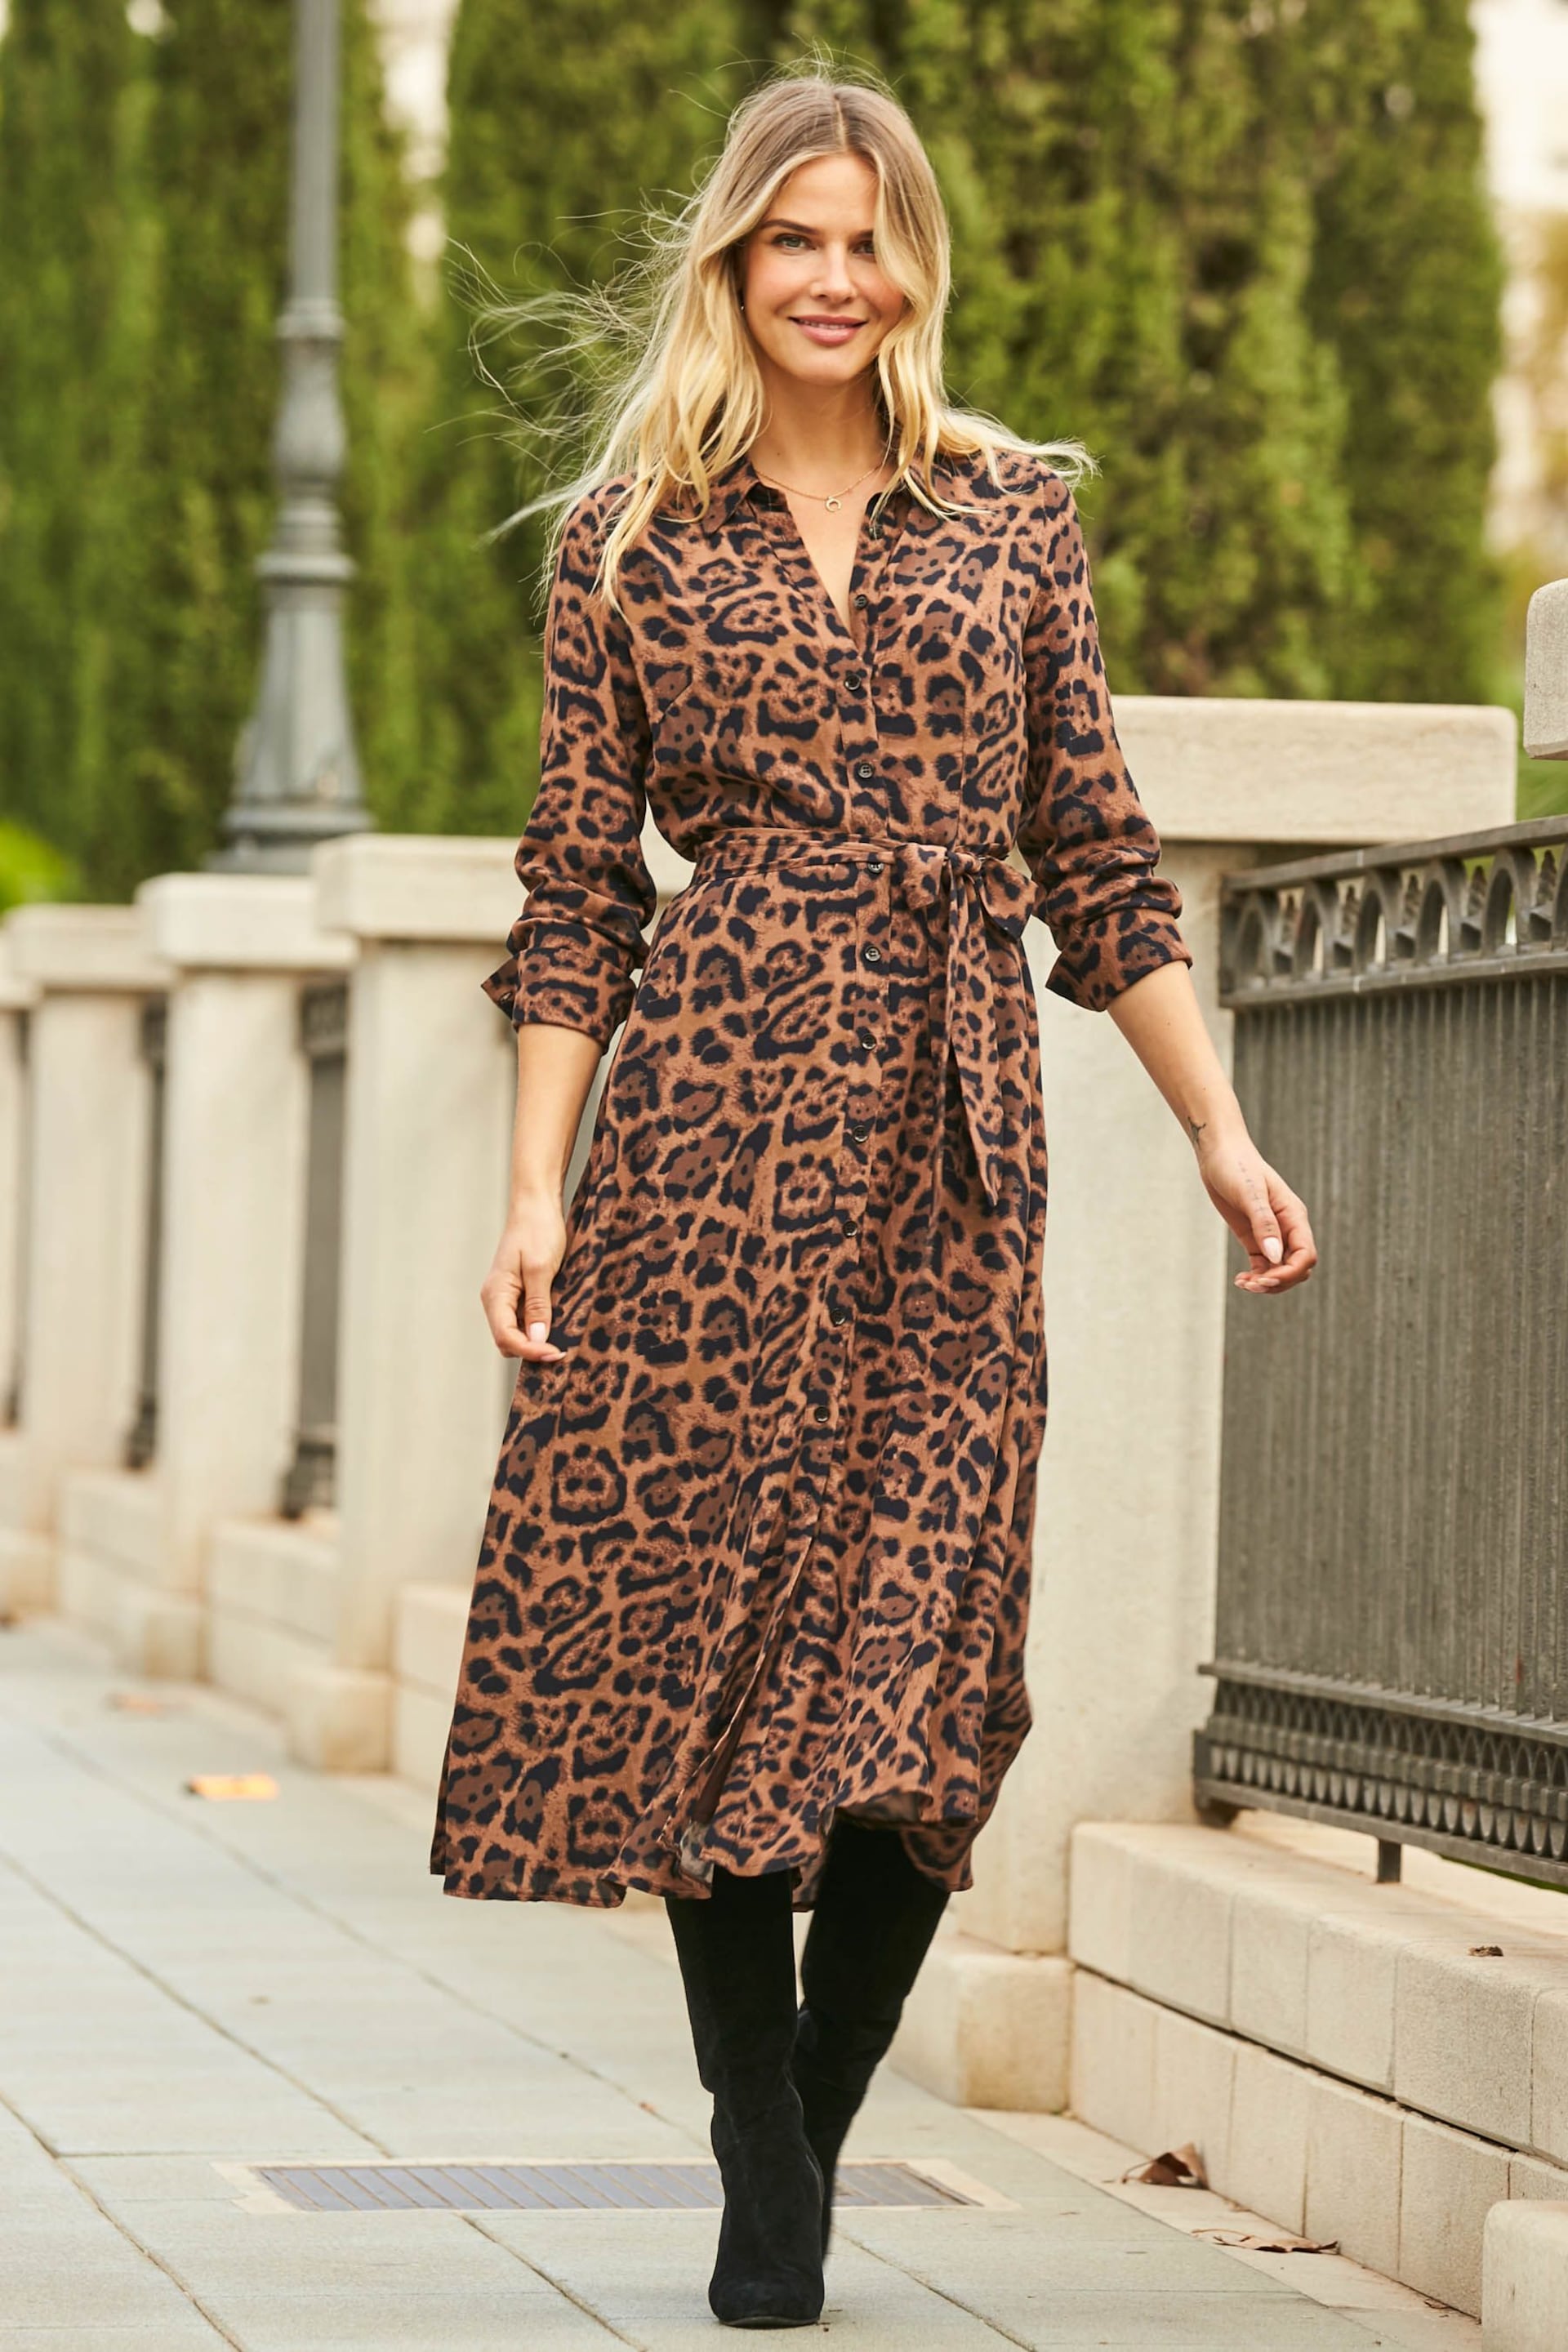 Sosandar Black/Brown Leopard Print Shift Dress With Belt - Image 3 of 5